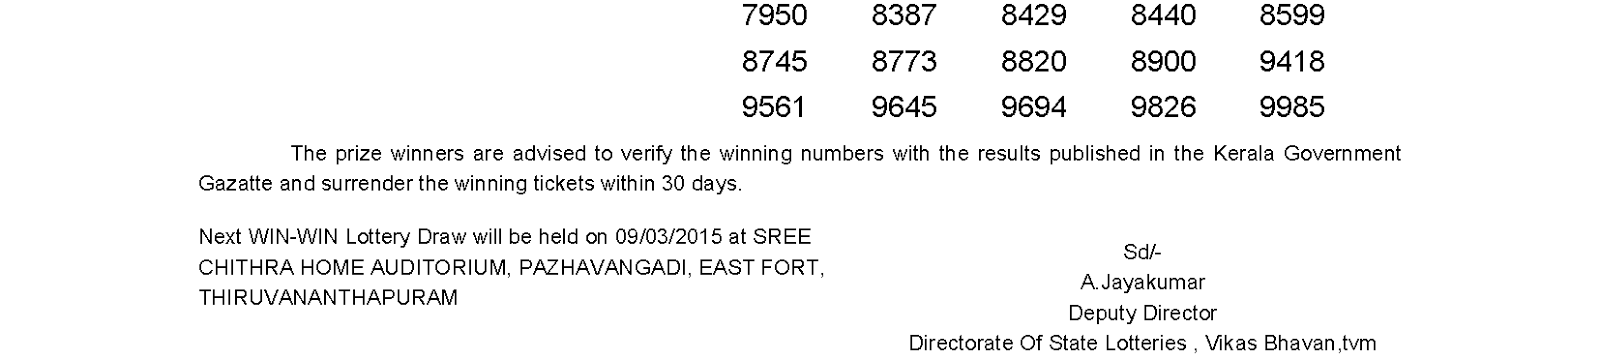 WINWIN Lottery W 297 Result 2-3-2015